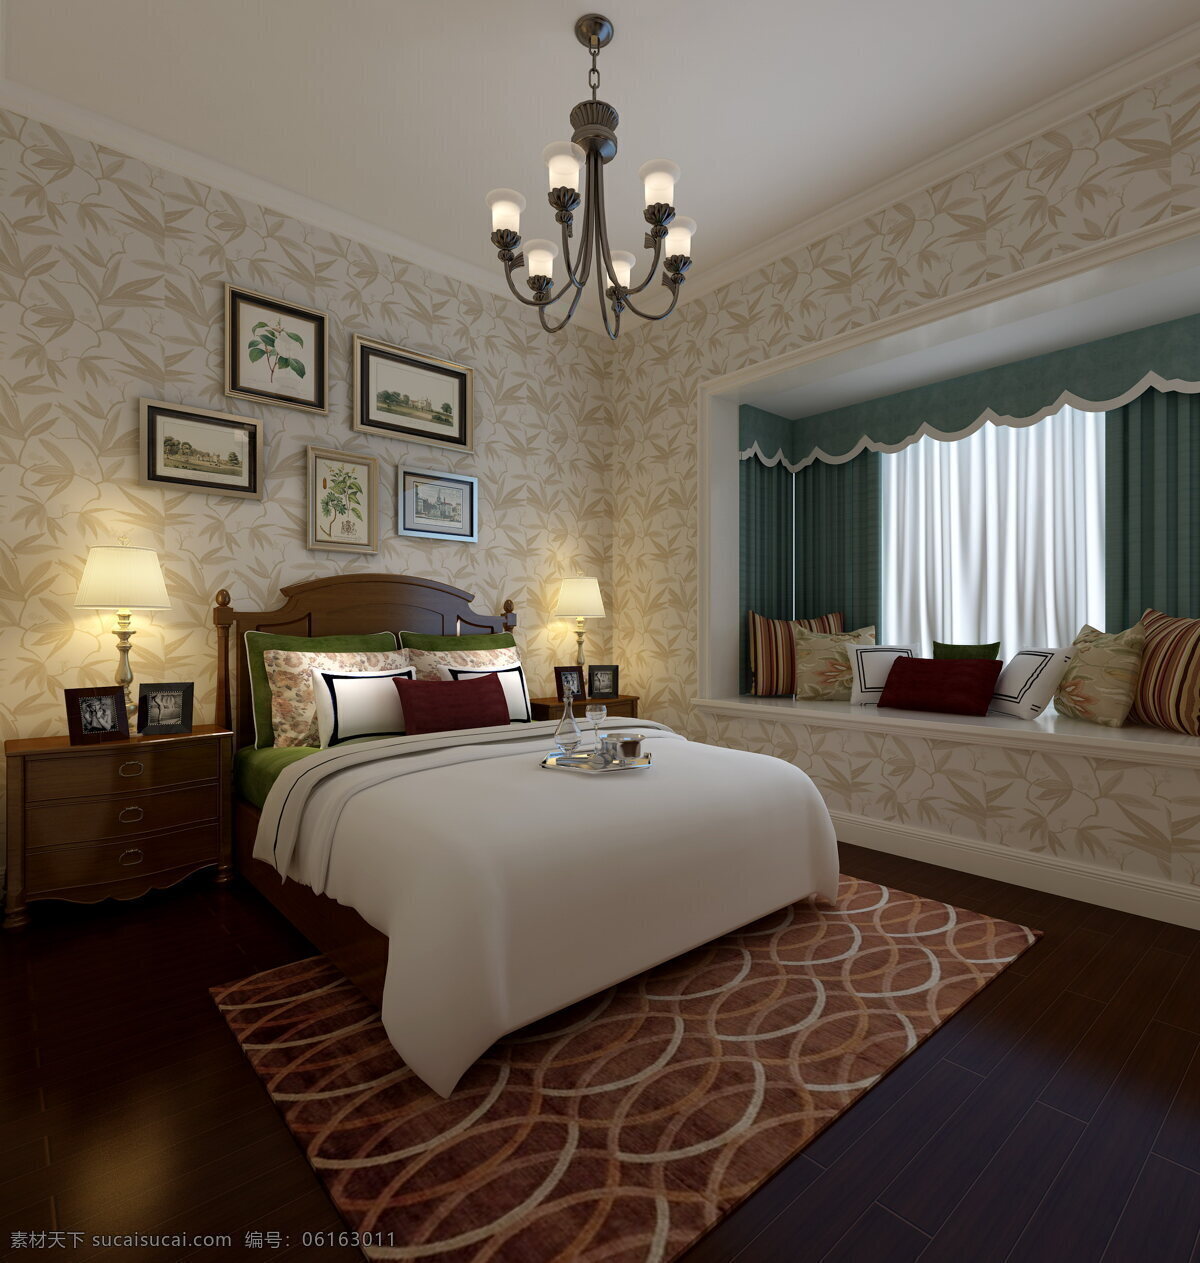 美式 清新 卧室 圆环 图案 地毯 室内装修 效果图 木地板 卧室装修 飘窗 蓝色窗帘